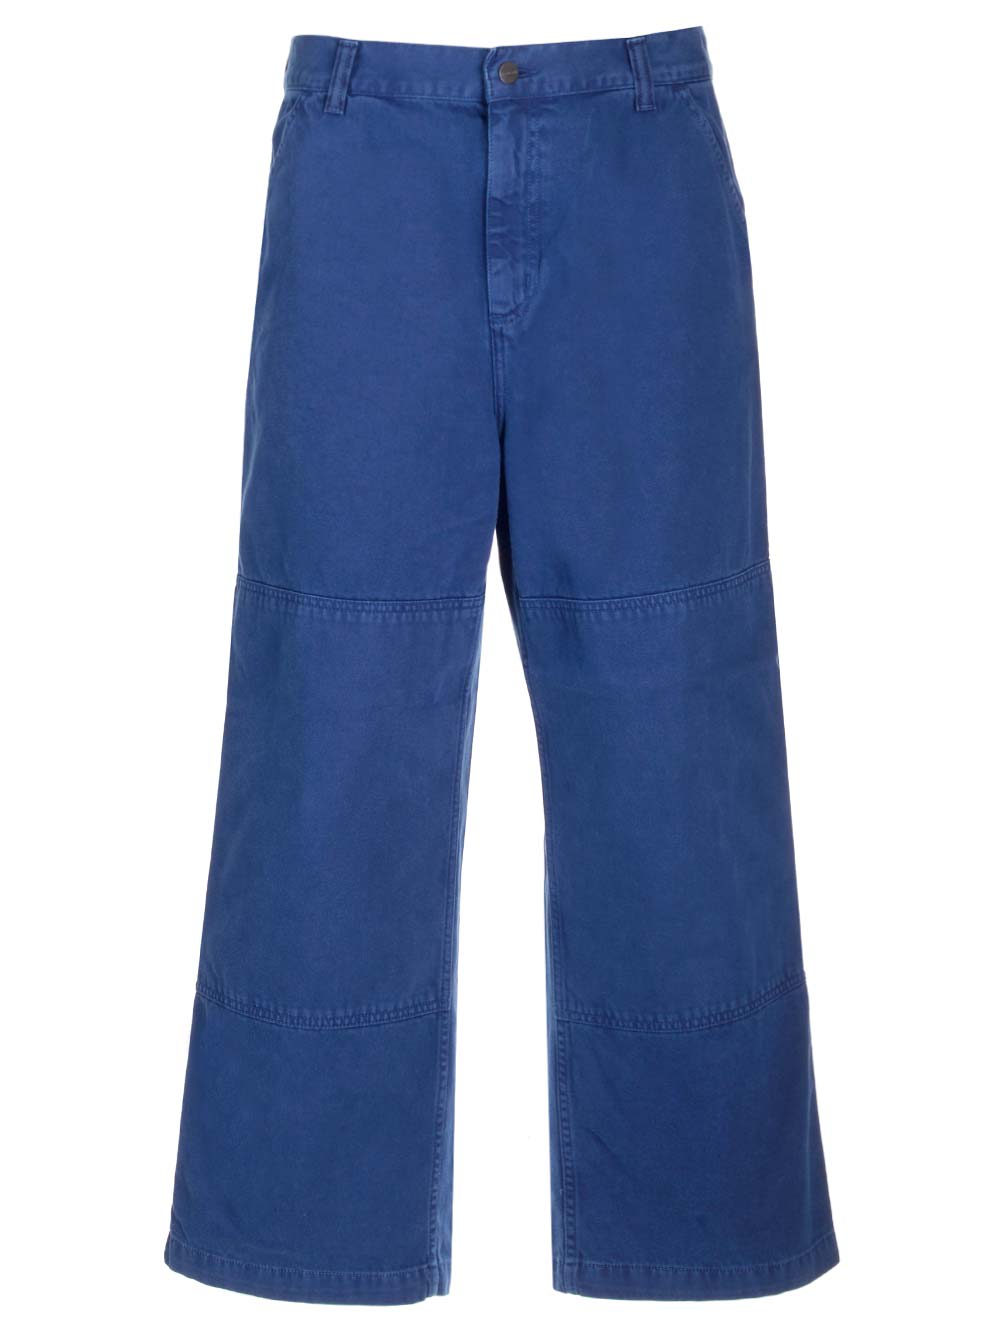 garrison Pants In Blue Twill